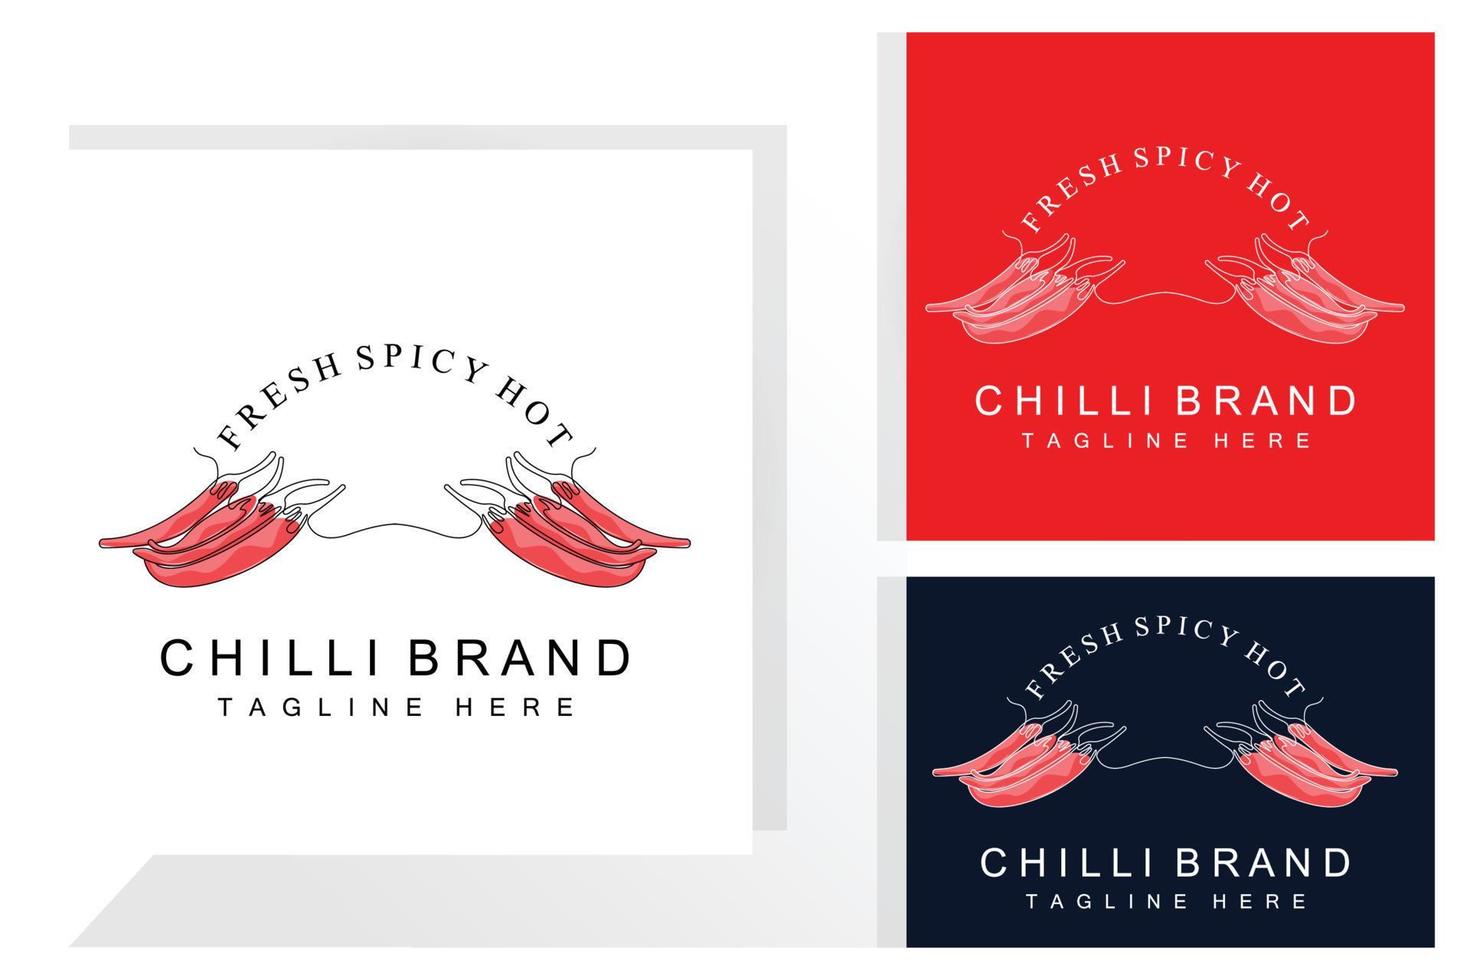 speziato chili logo disegno, rosso verdura illustrazione, cucina ingredienti, caldo chili vettore marca prodotti